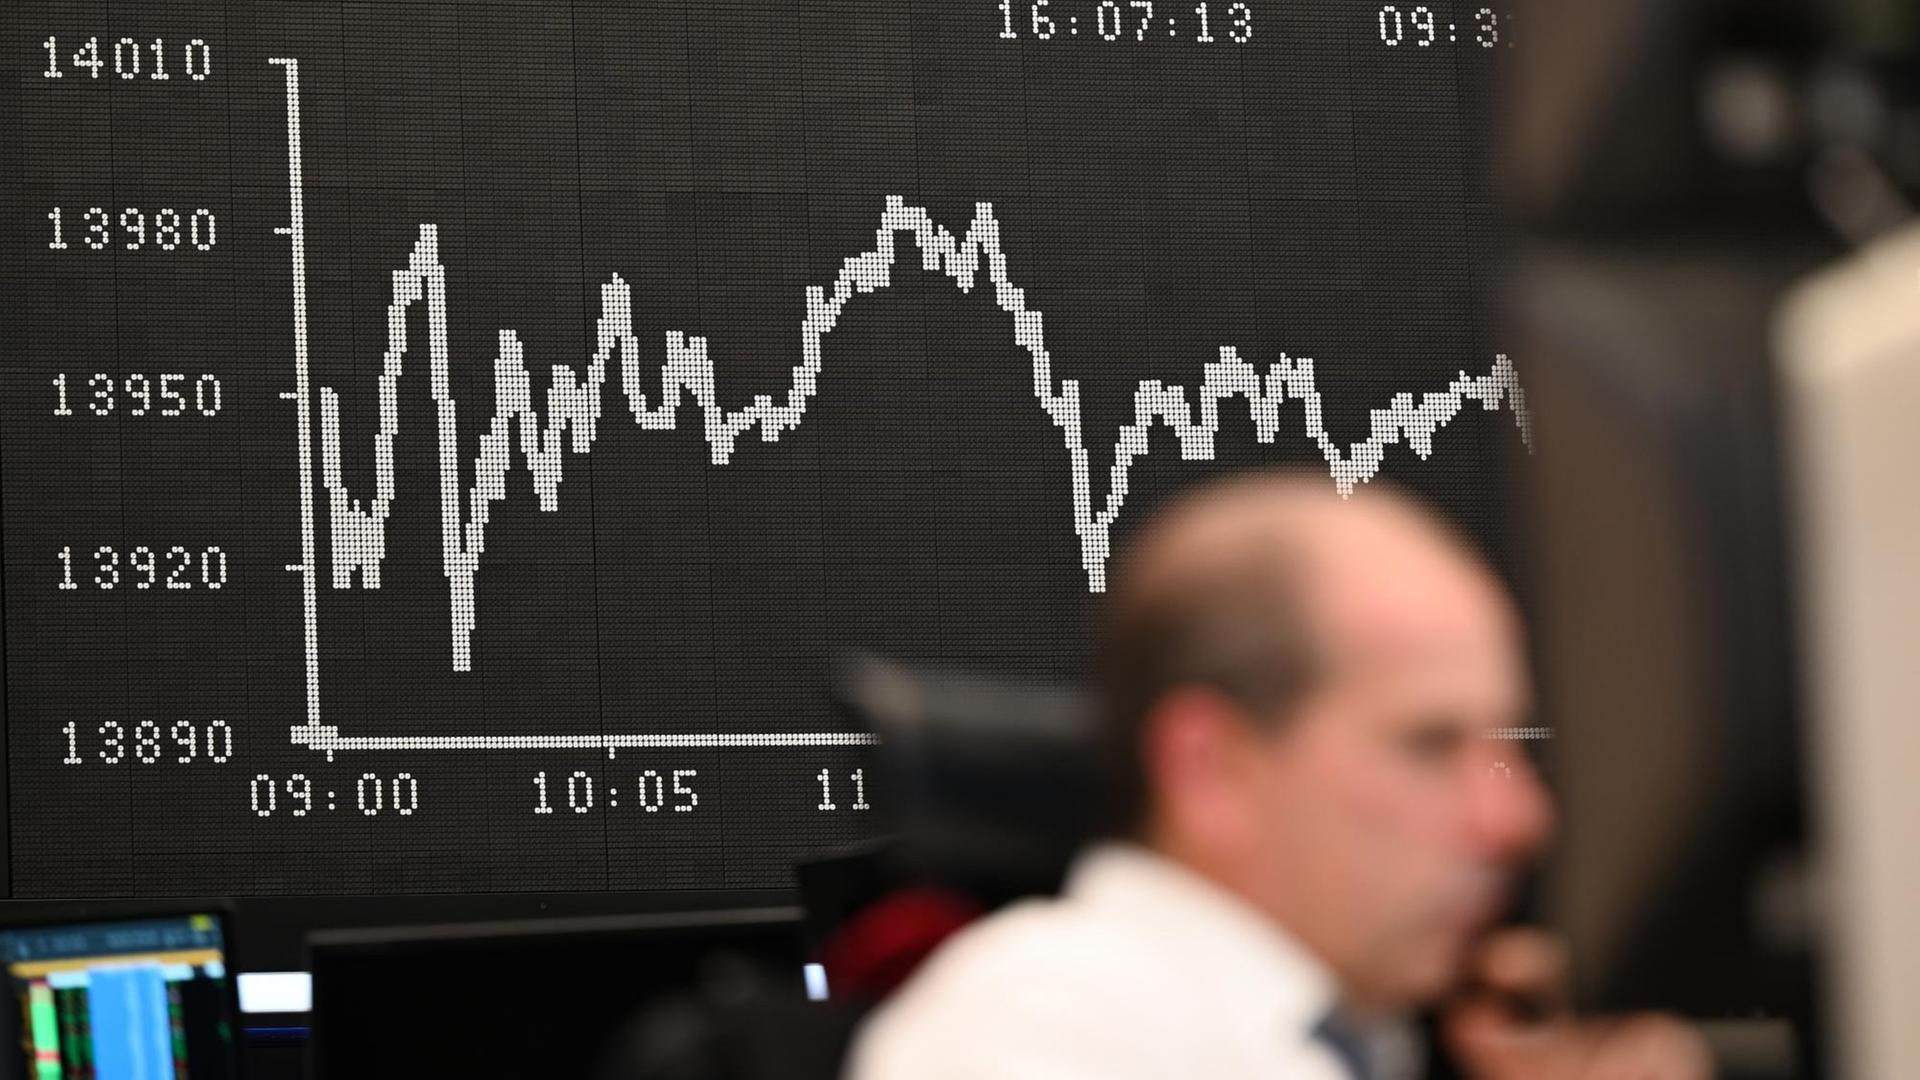 Impression von der Börse in Frankfurt: Während ein Aktienhändler an der Börse seine Monitore beobachtet, wird auf einer Tafel im Hintergrund die Dax-Kurve angezeigt.